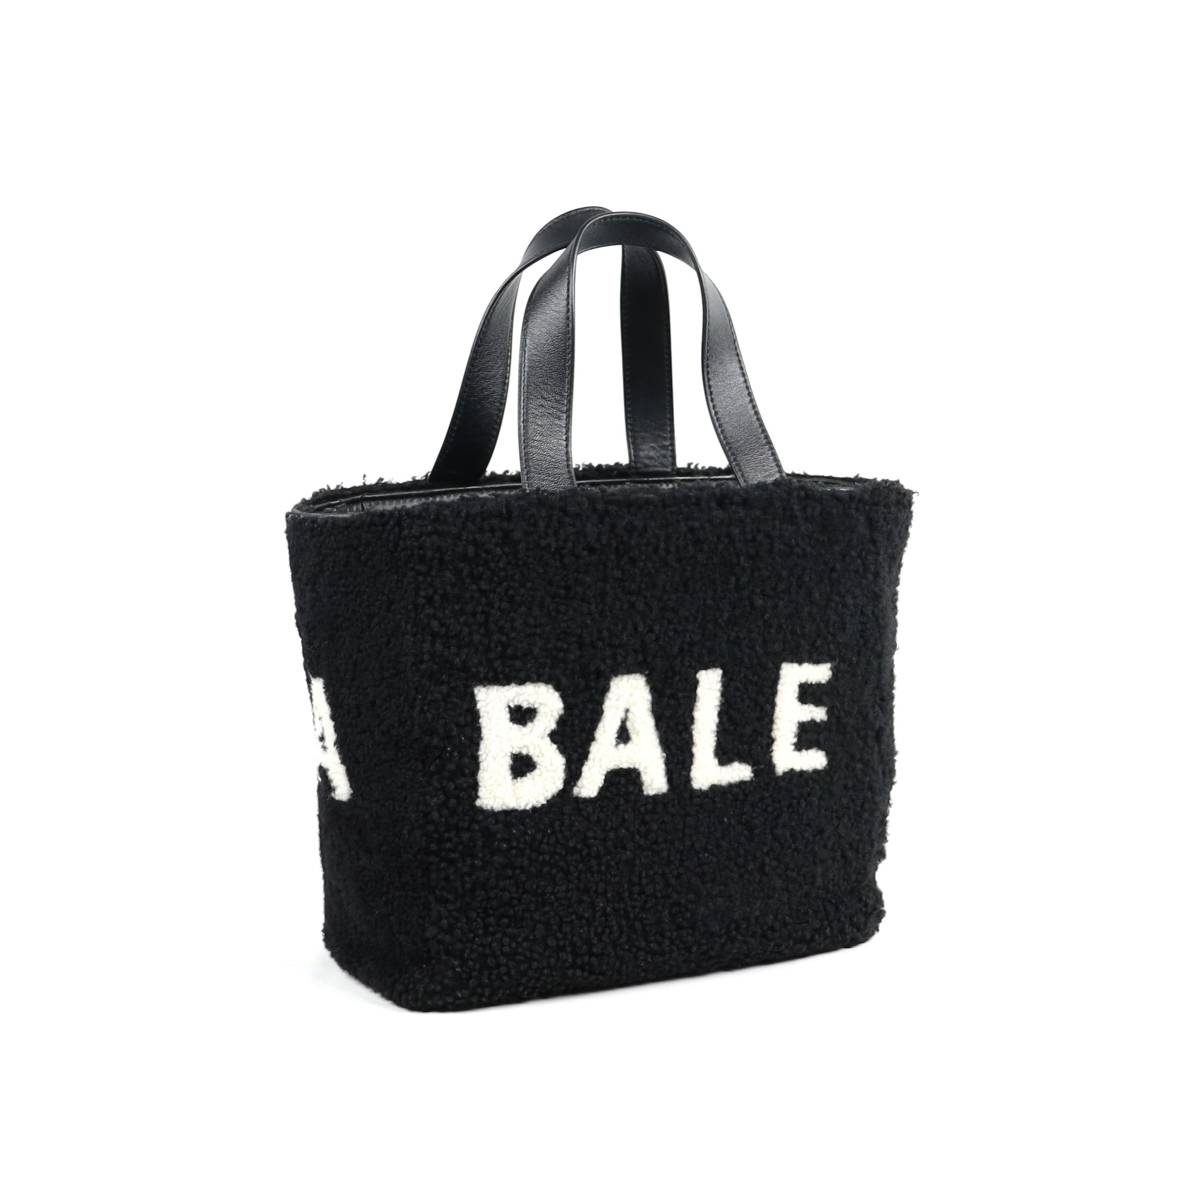  редкий прекрасный товар Balenciaga мутон сумка 2way ручная сумочка 